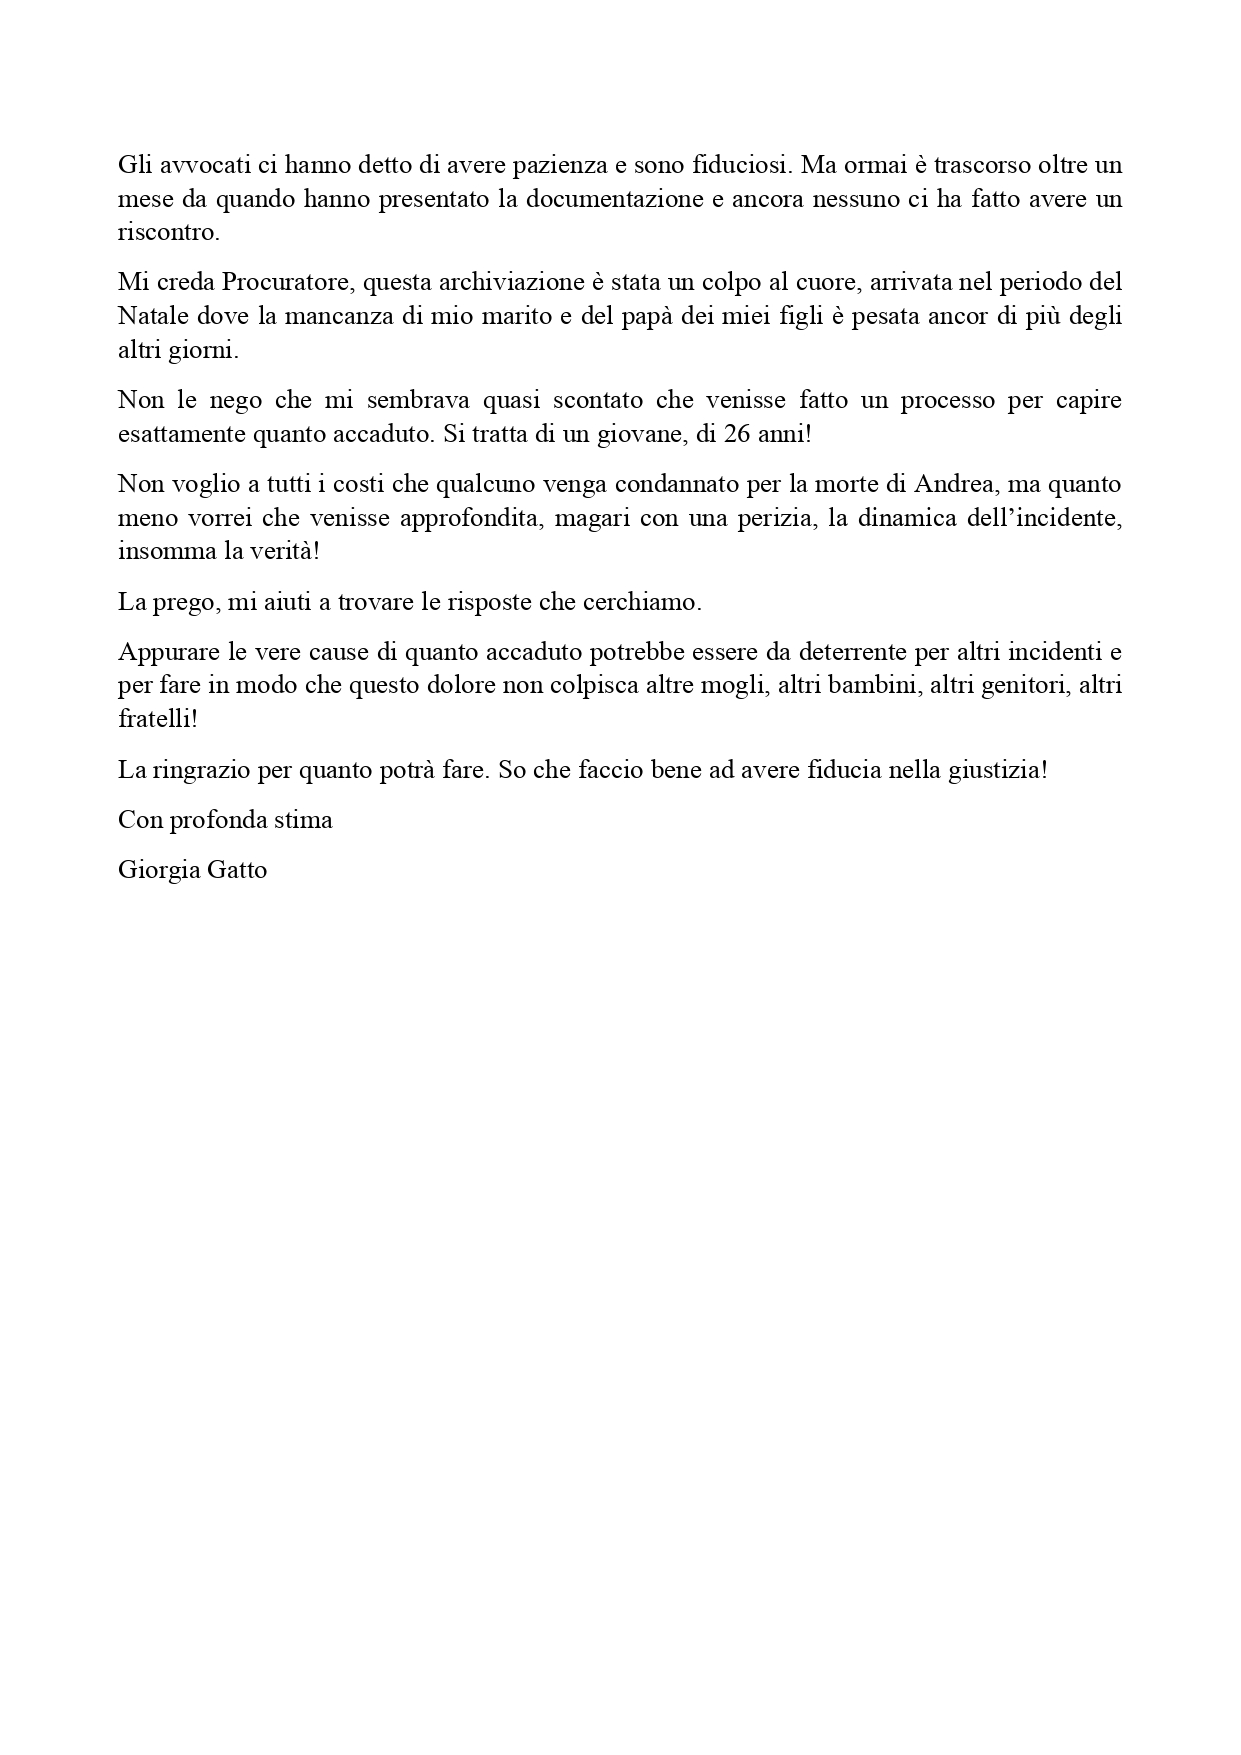 Lettera a Procuratore di Vicenza _page-0002